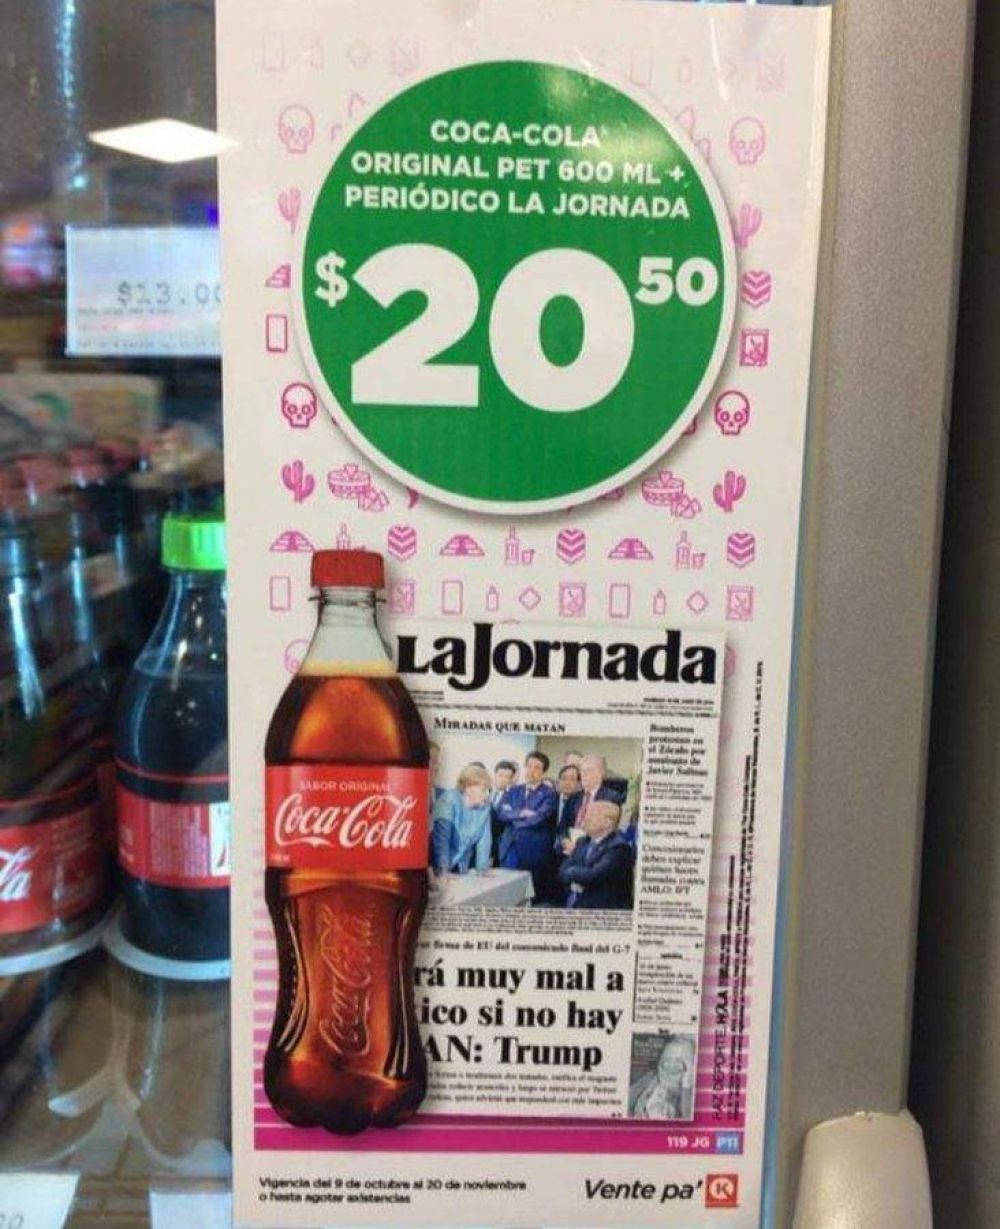 La Jornada vende sus peridicos con una Coca-Cola para que los compren y as result su accin promocional